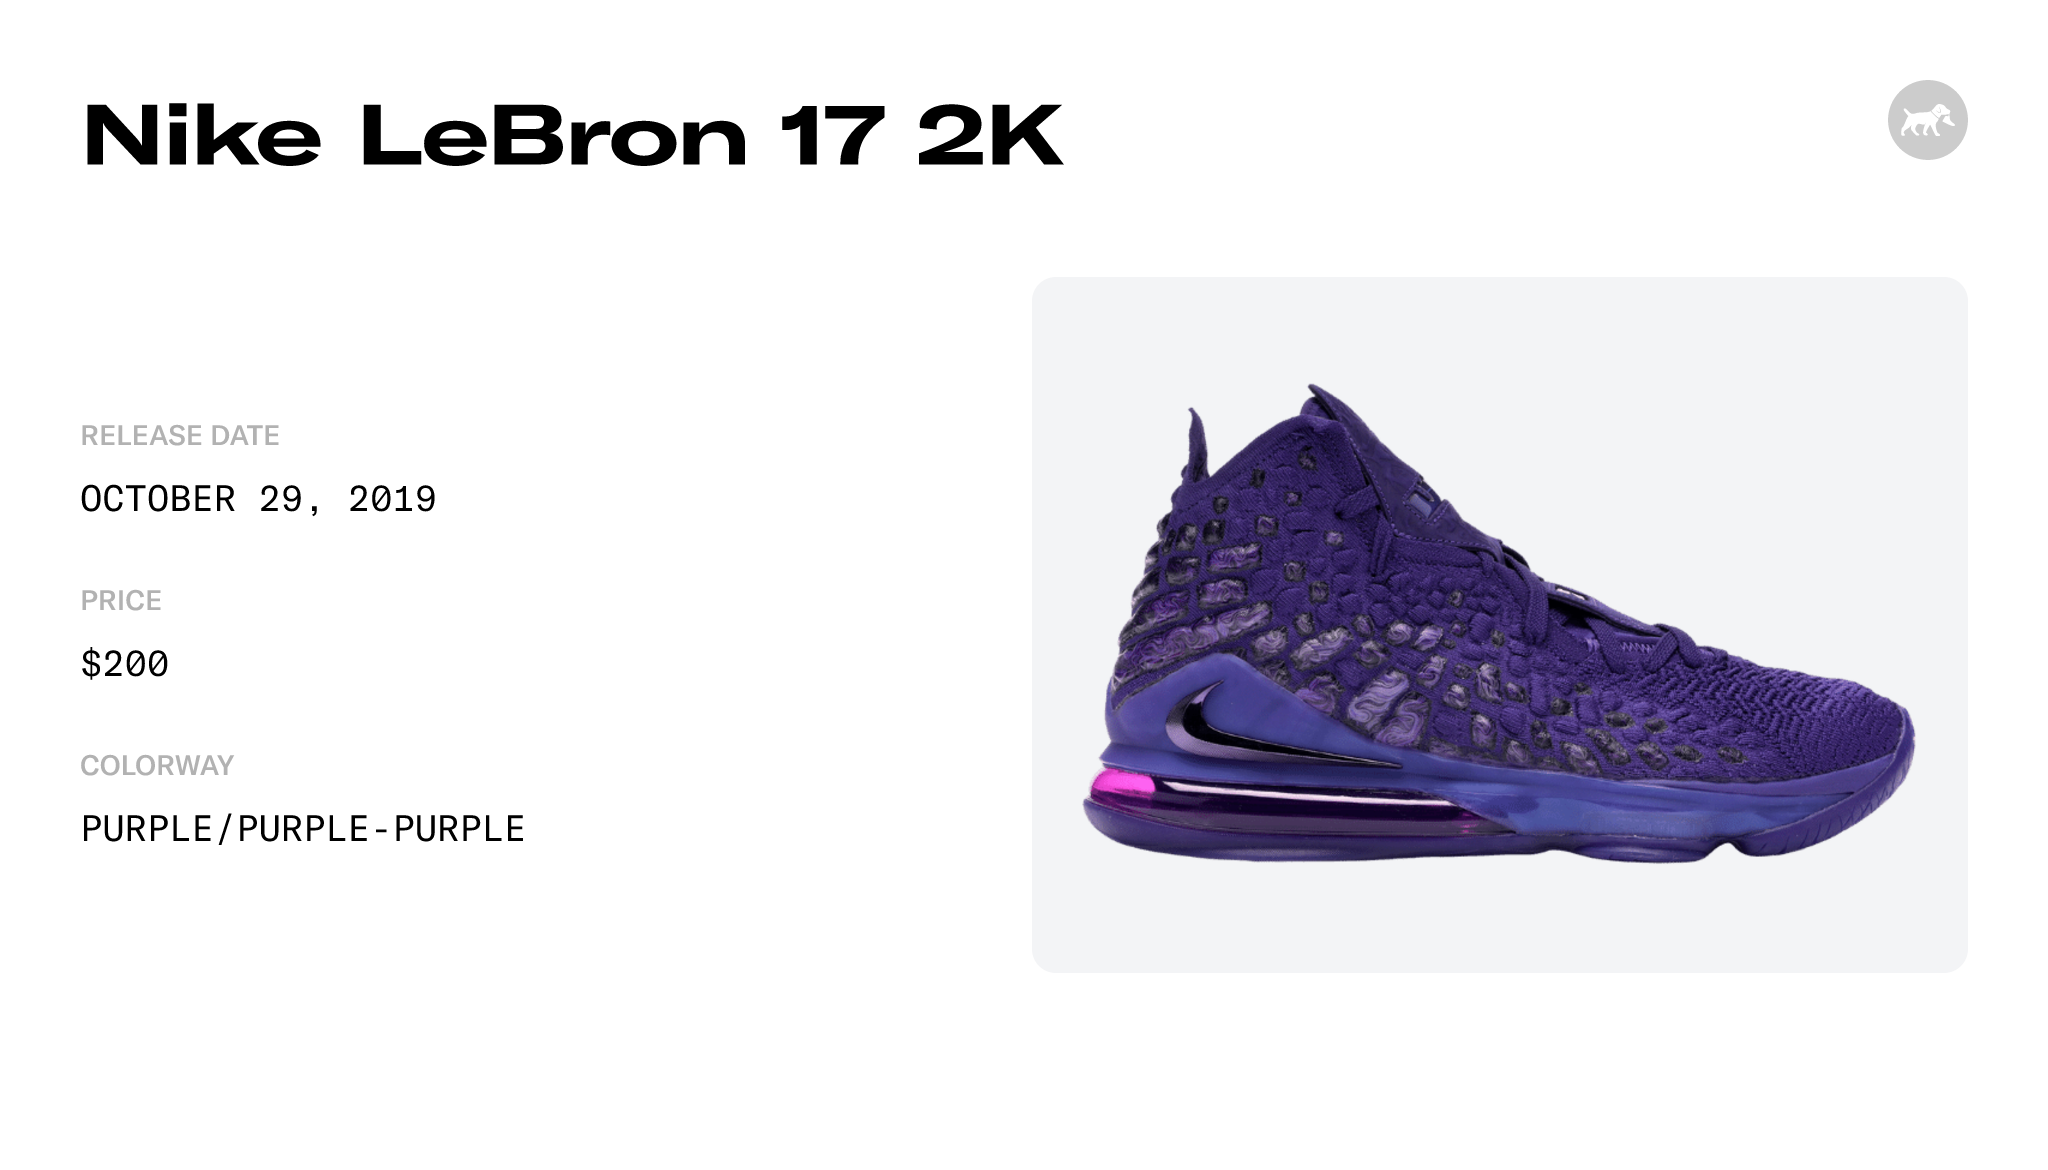 Nike LeBron 17 2K - BQ3177-500 Raffles and Release Date